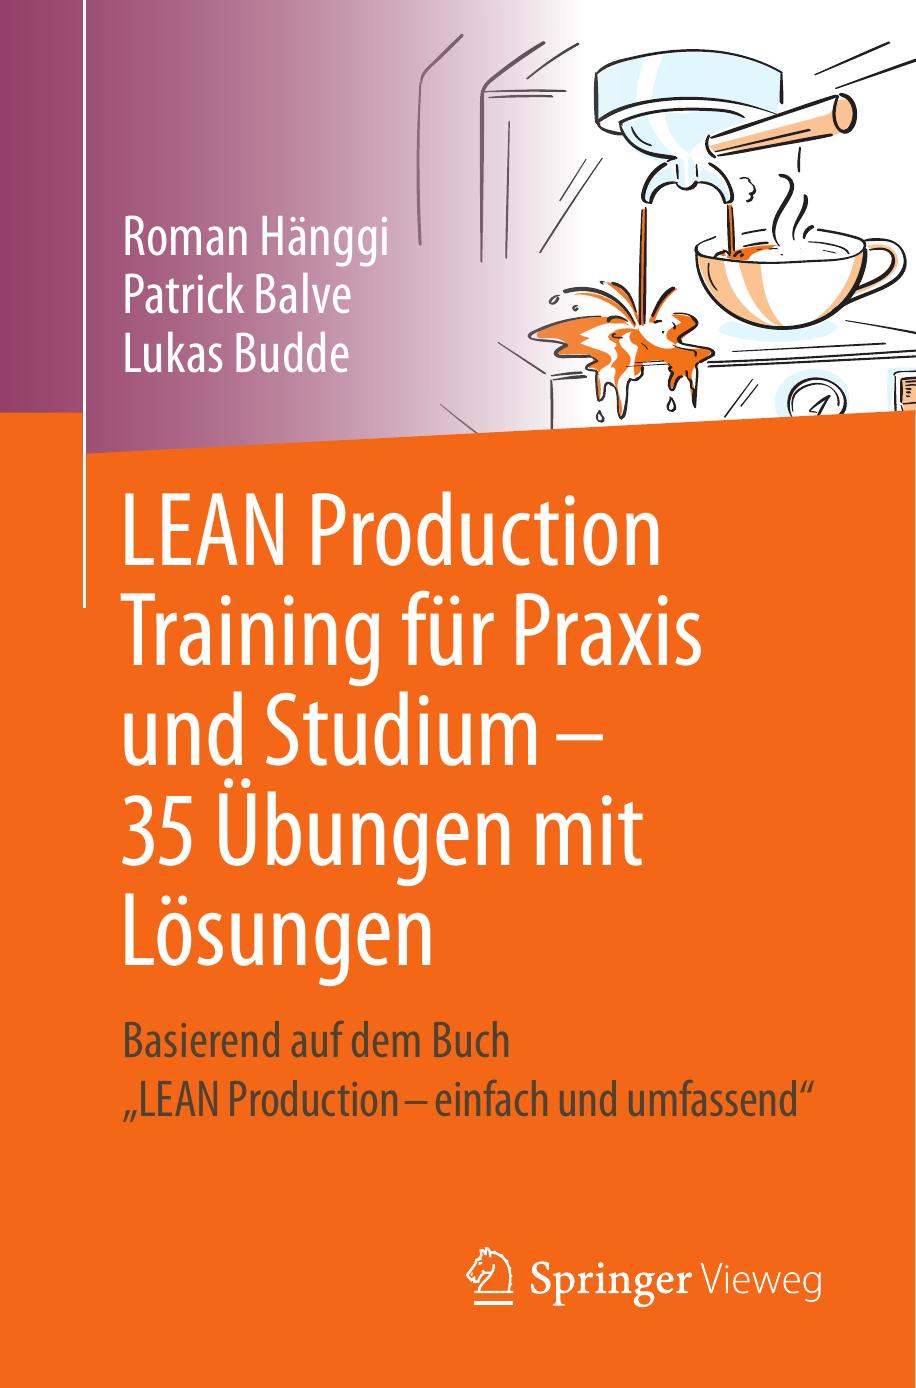 LEAN Production Training für Praxis und Studium: 35 Übungen Mit Lösungen: Basierend Auf Dem Buch LEAN Production Einfach und Umfassend